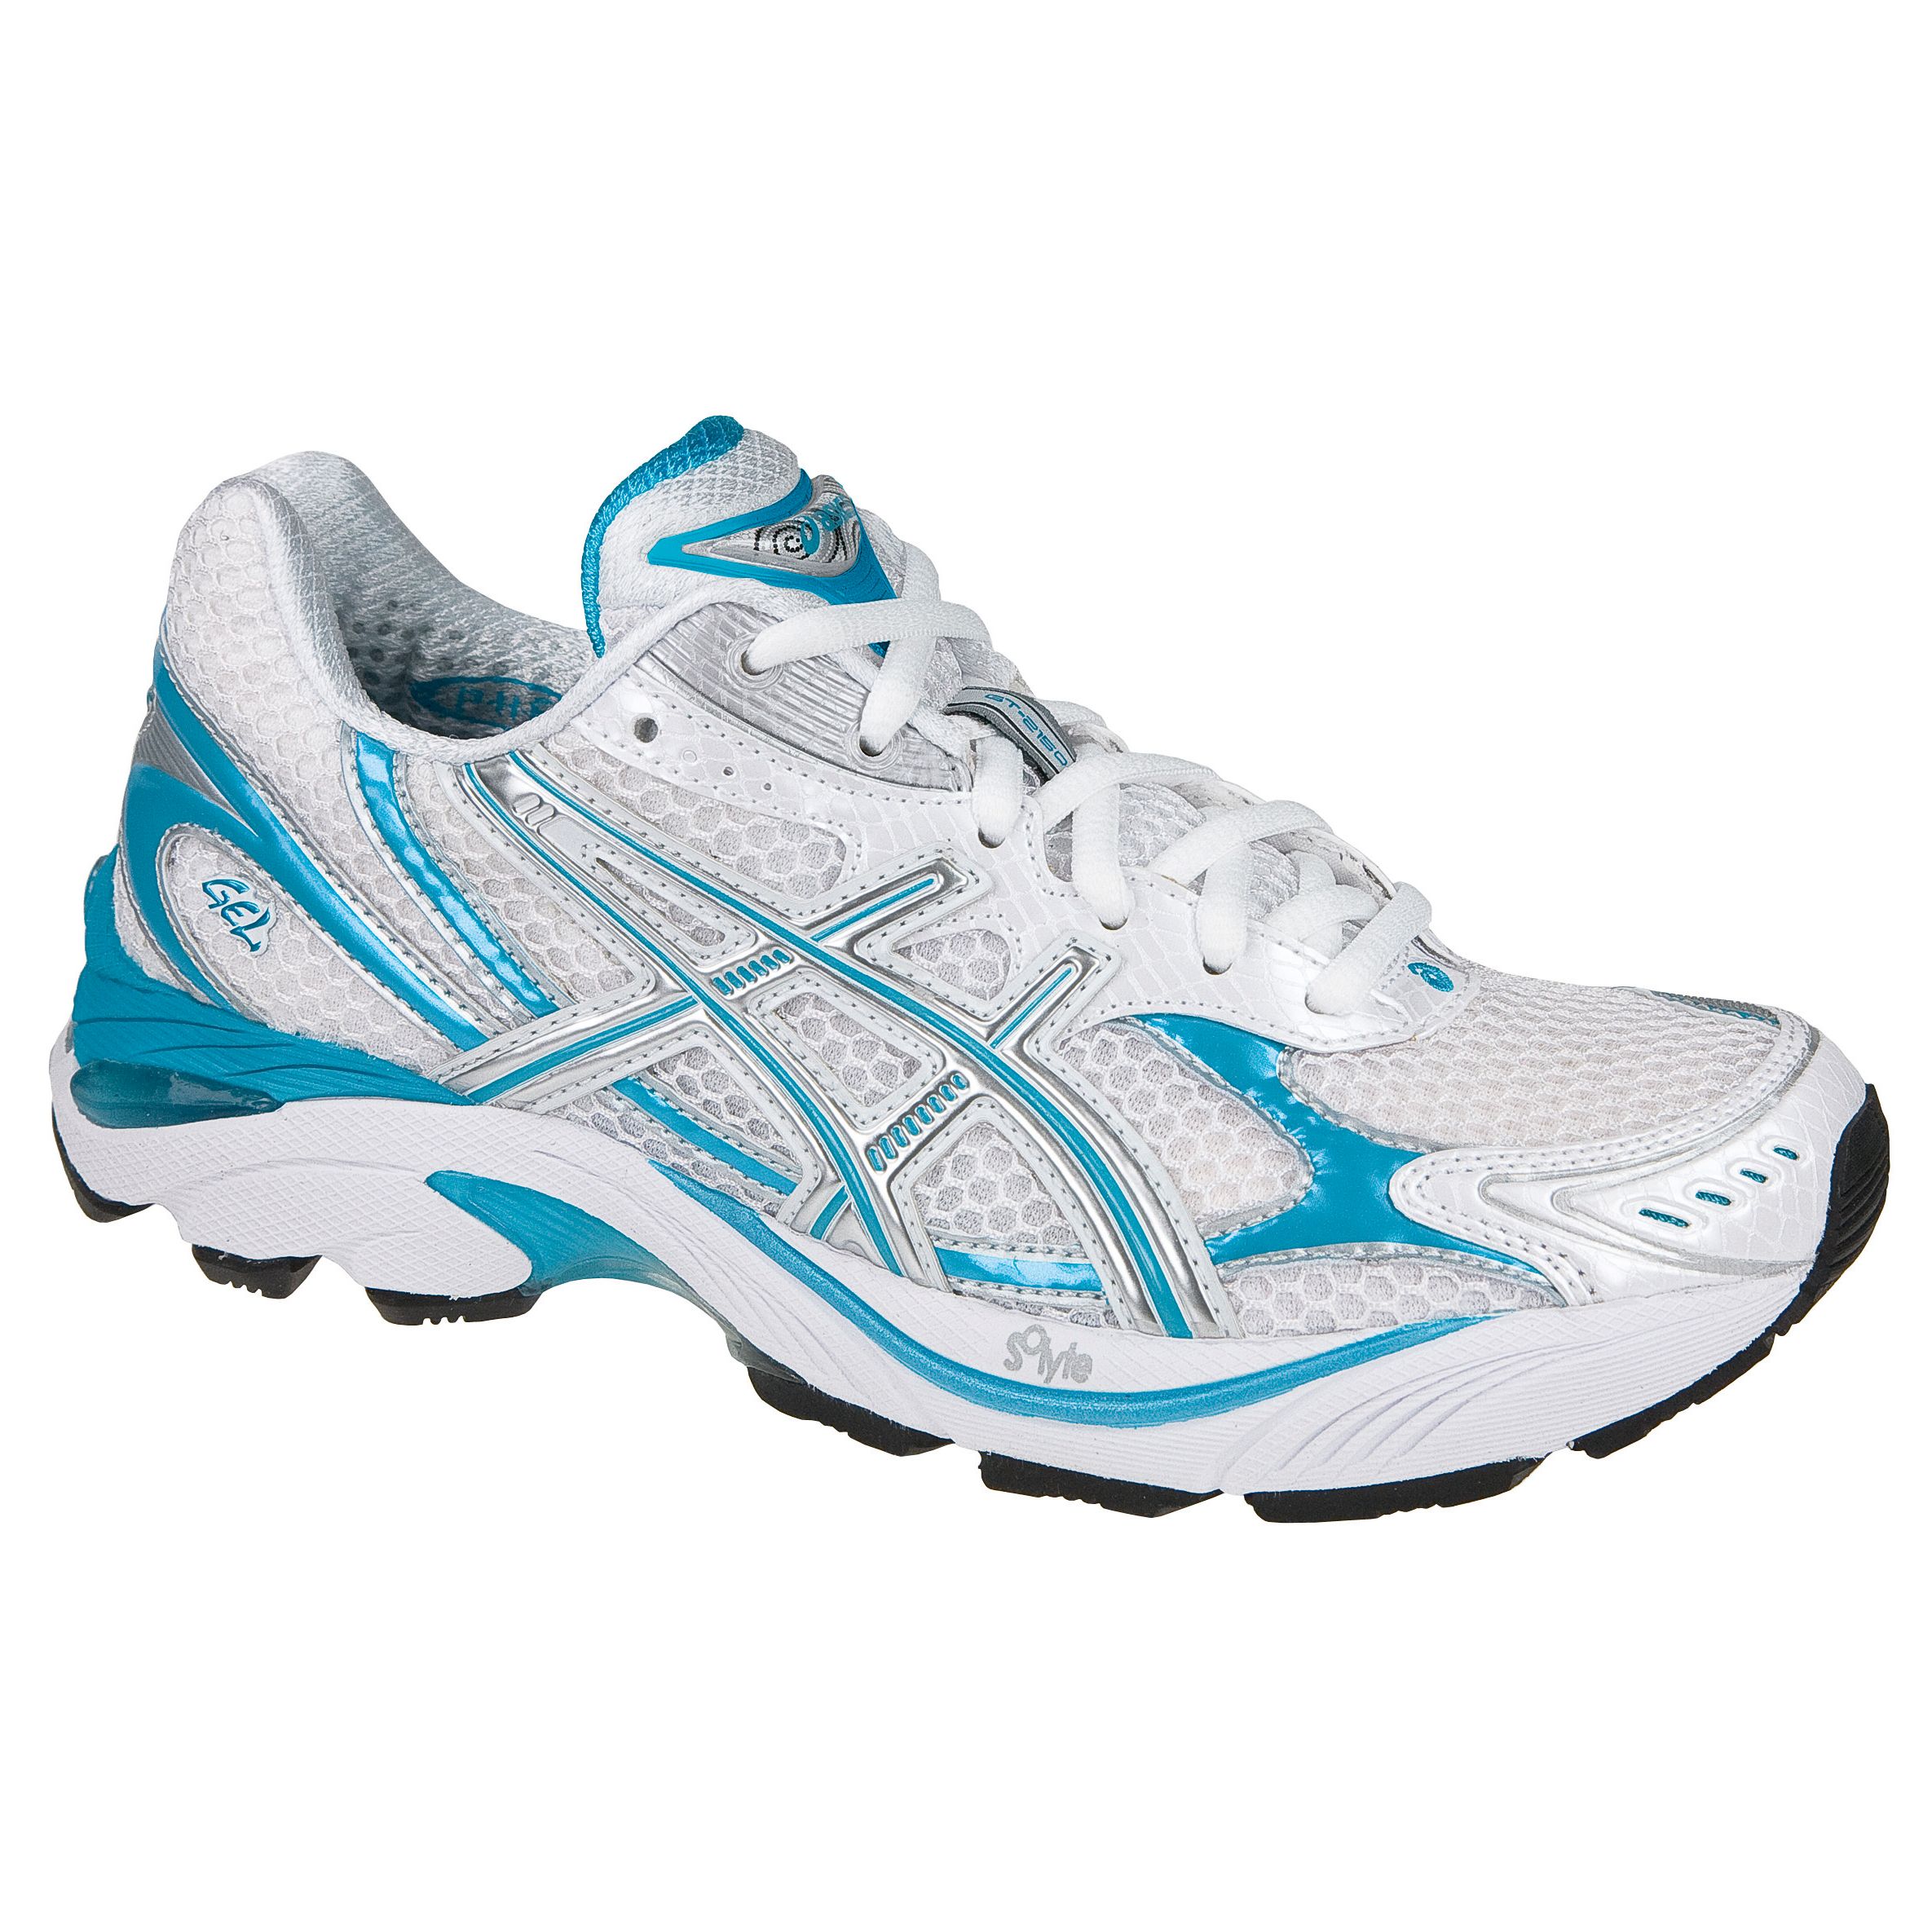 Asics GT2150 Running Shoes, White/Blue